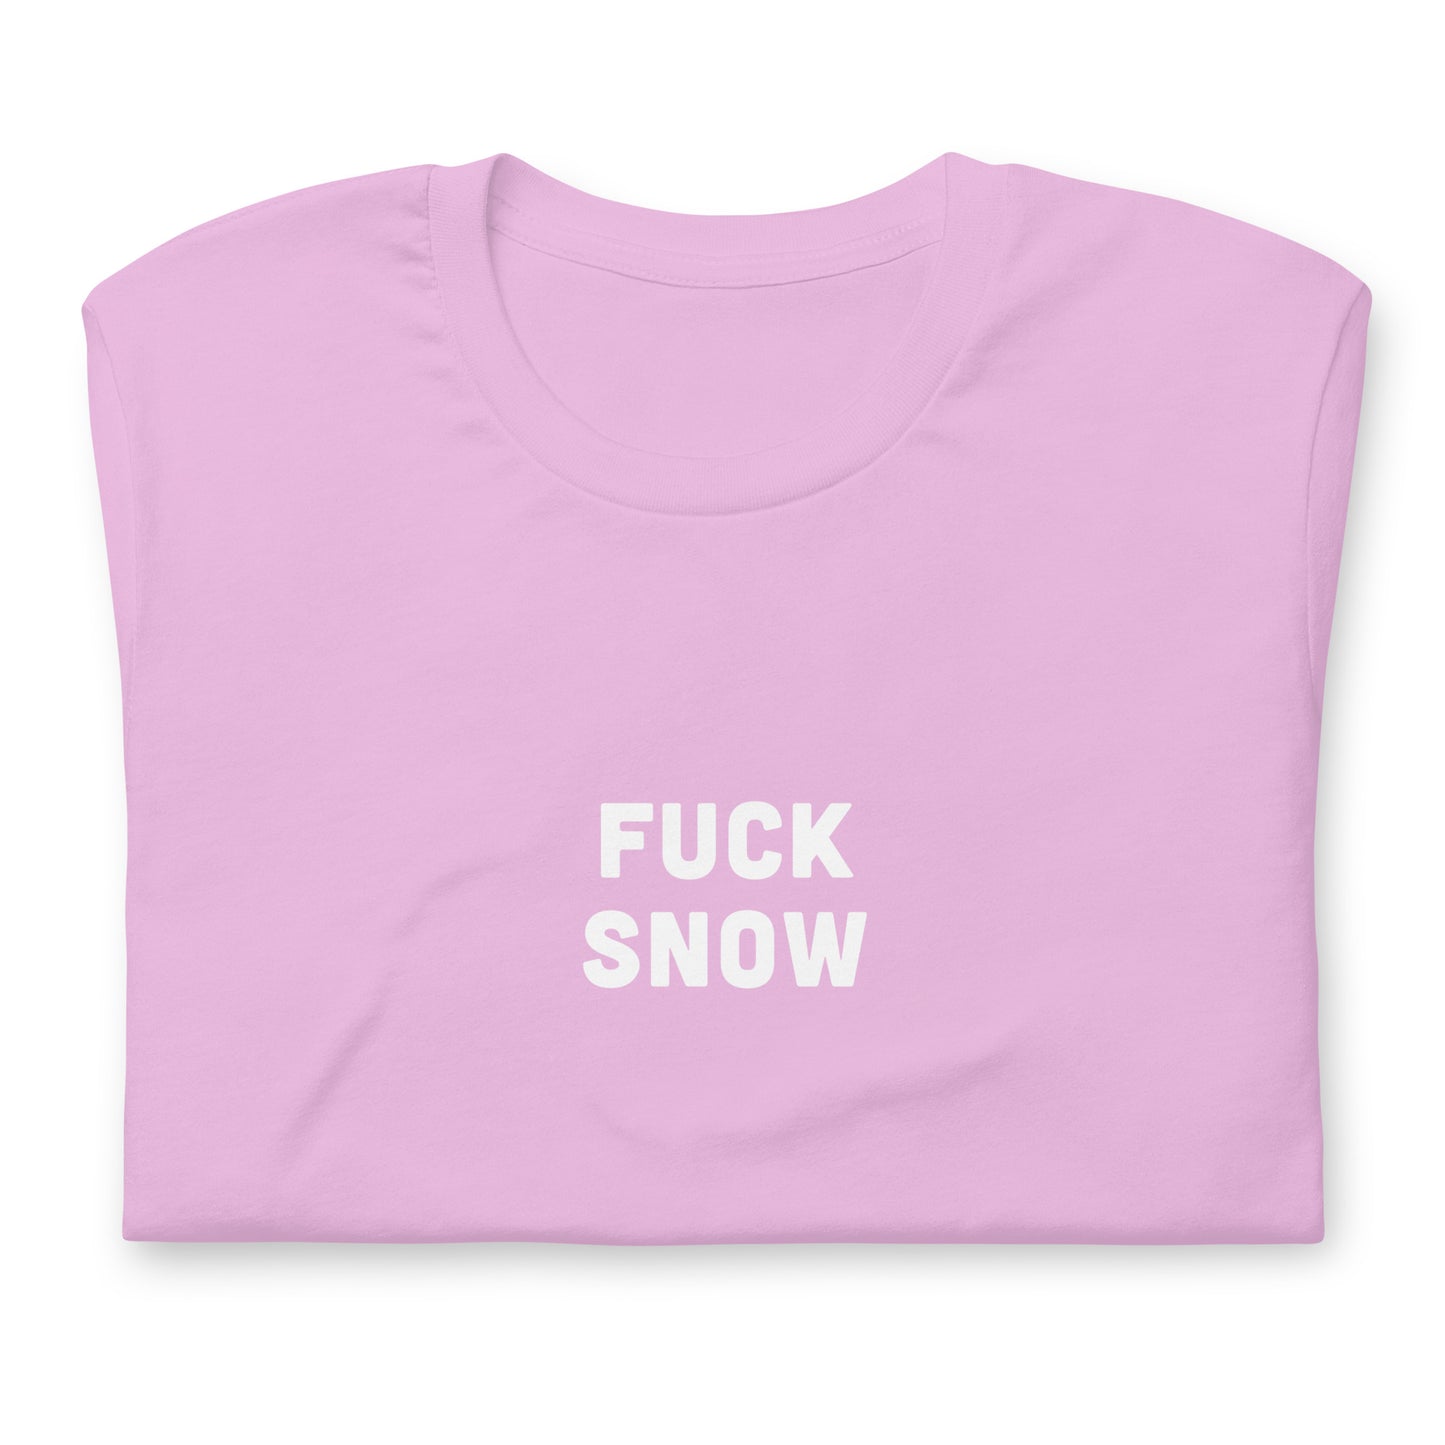 Fuck Snow T-Shirt Size S Color Asphalt